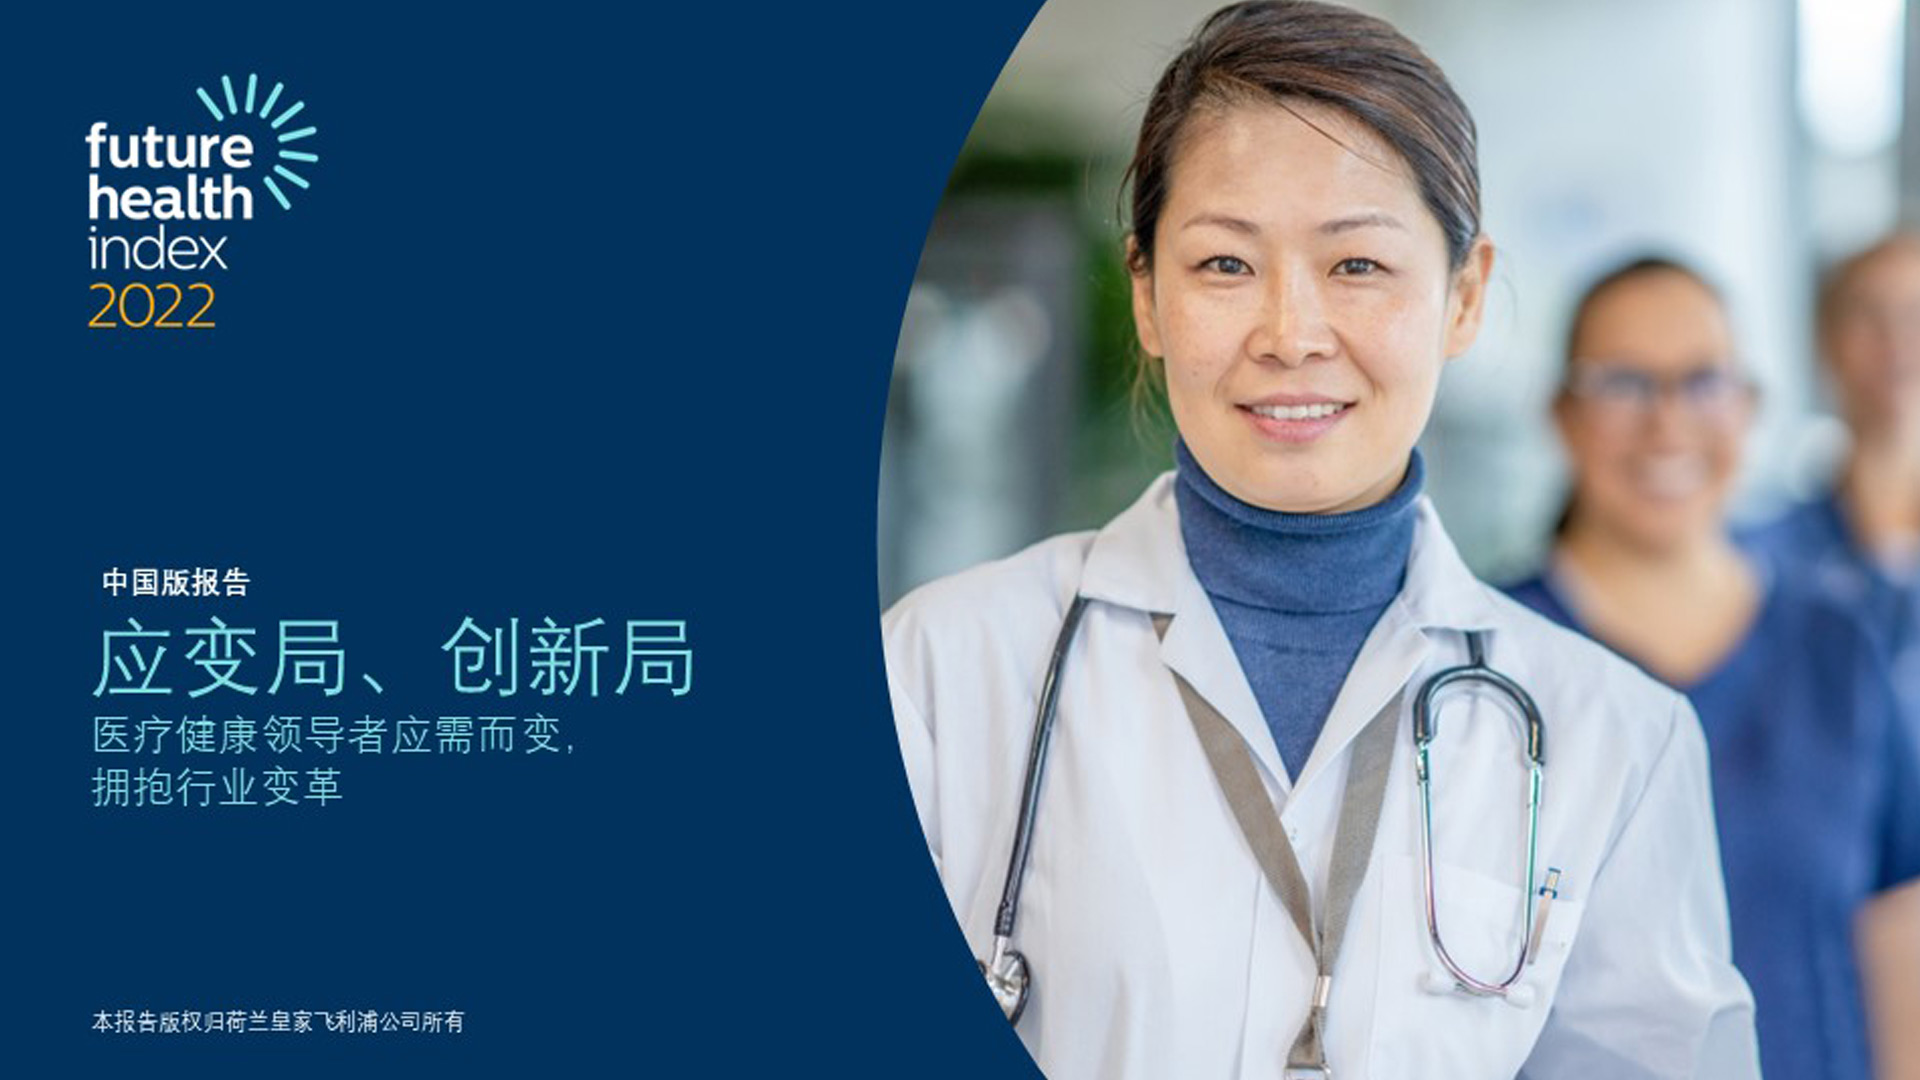 飞利浦发布中国版2022年未来健康指数报告